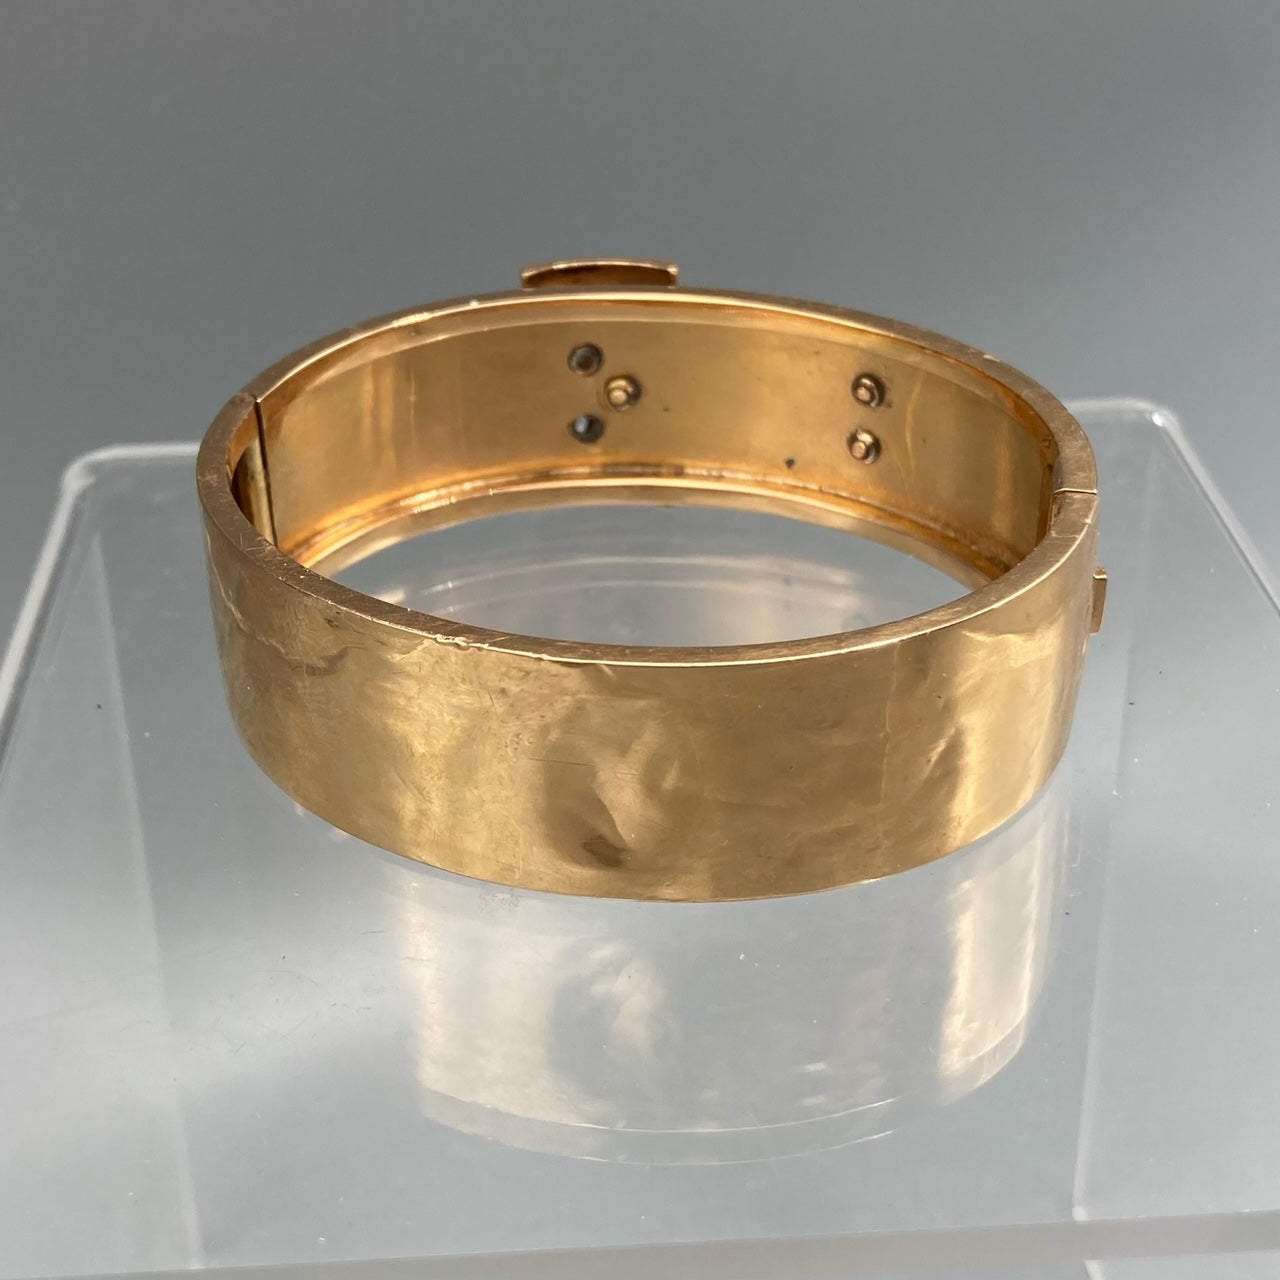 Bracelet antique de boucle d’or victorien